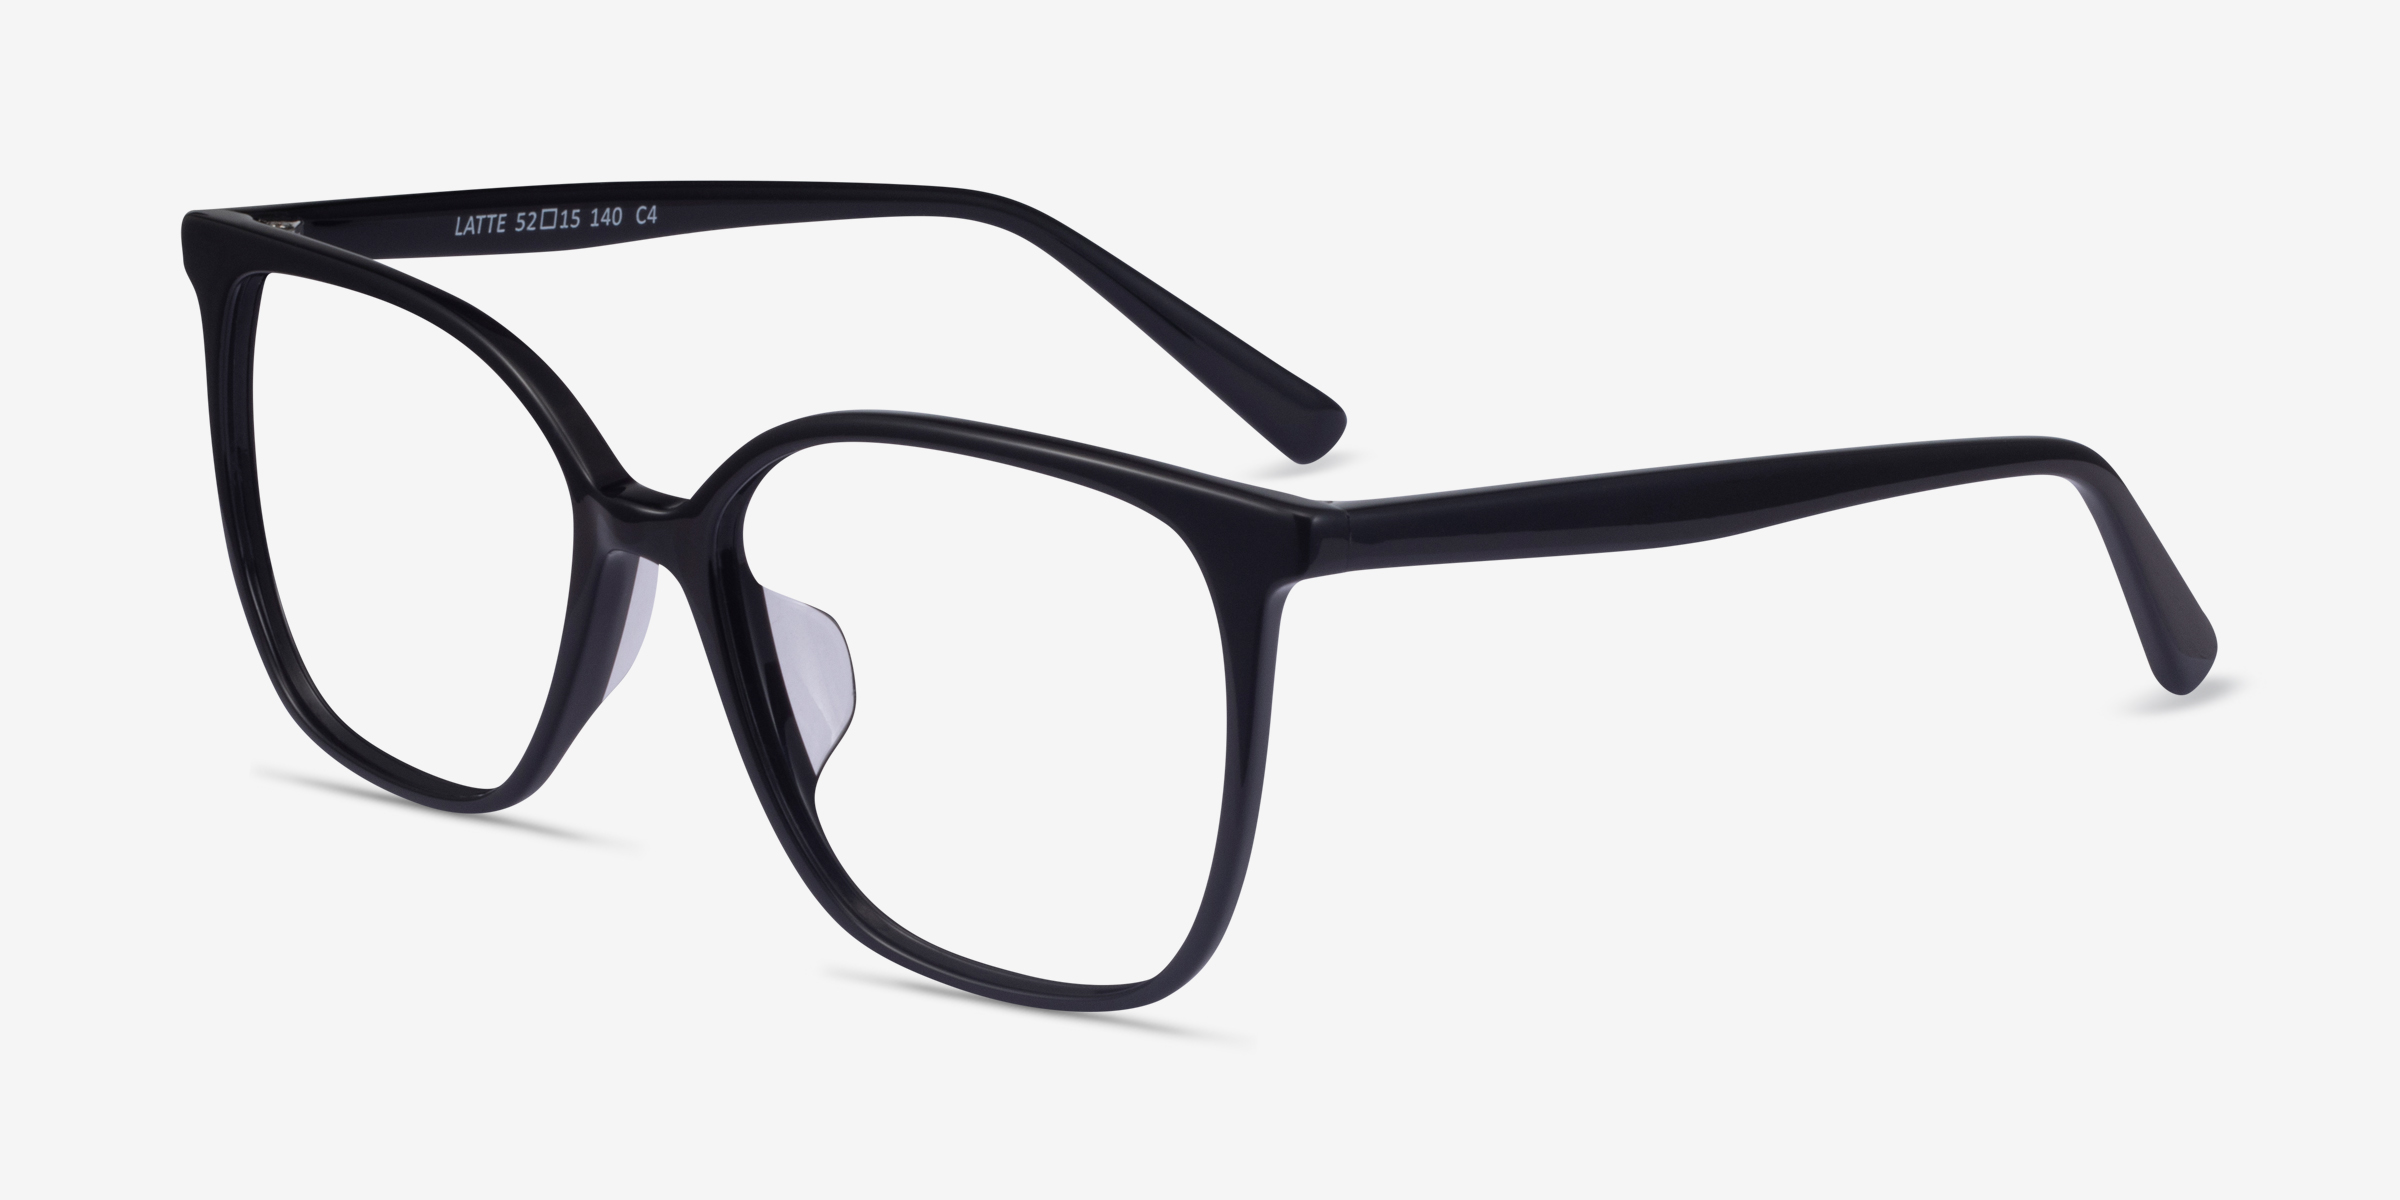 Latte Square Black Glasses for Women | Eyebuydirect